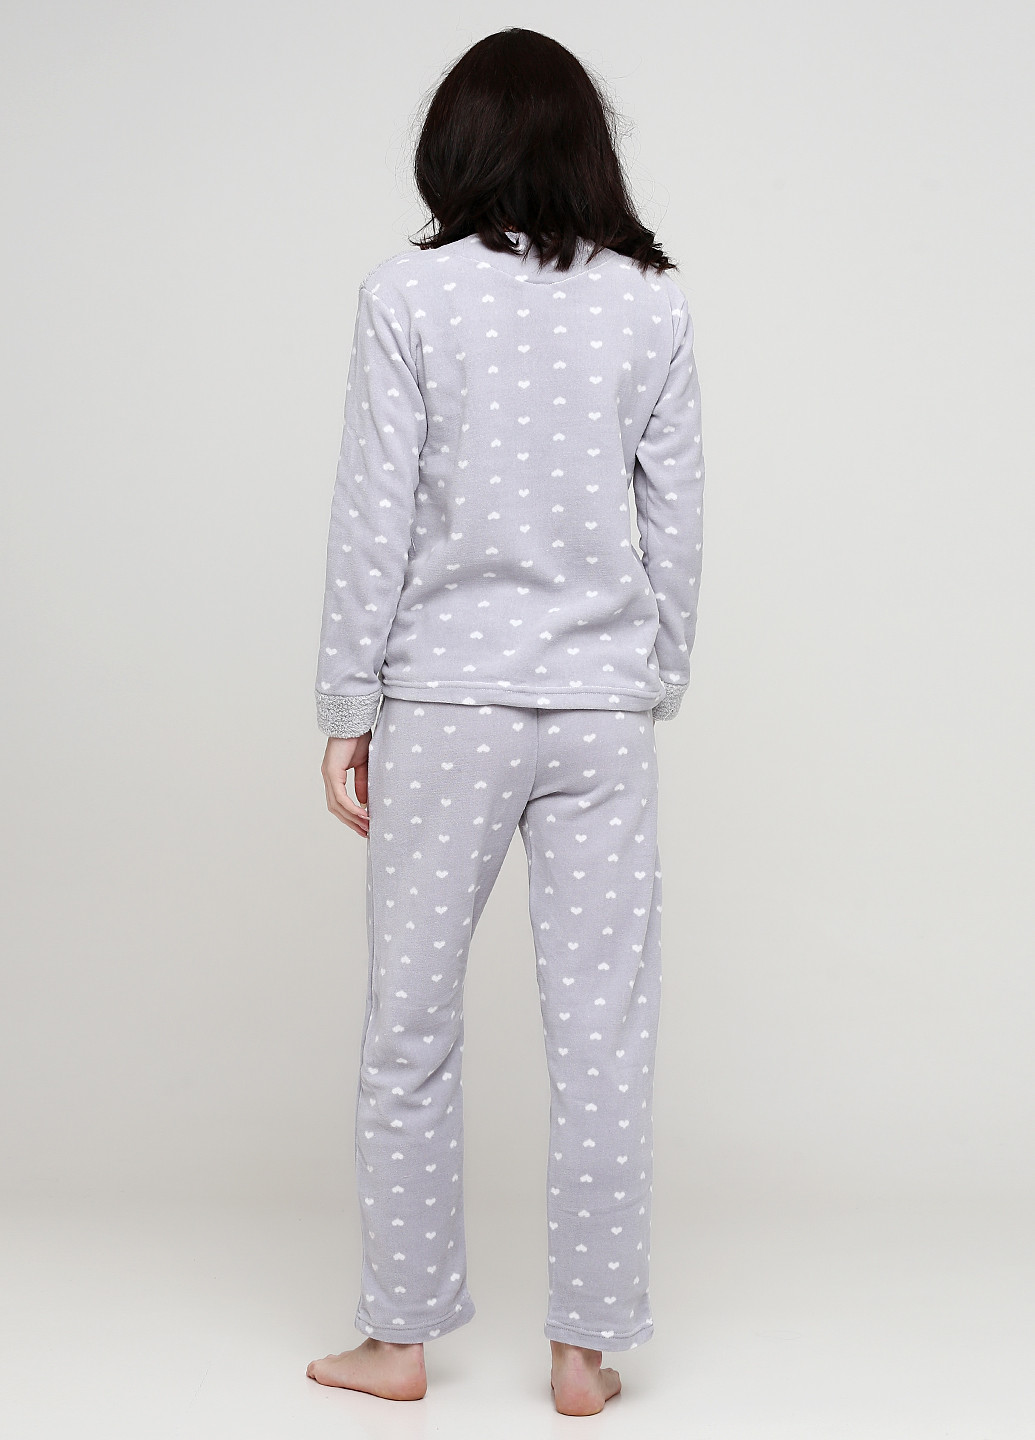 Светло-серая всесезон пижама (свитшот, брюки, маска для сна) свитшот + брюки Fawn